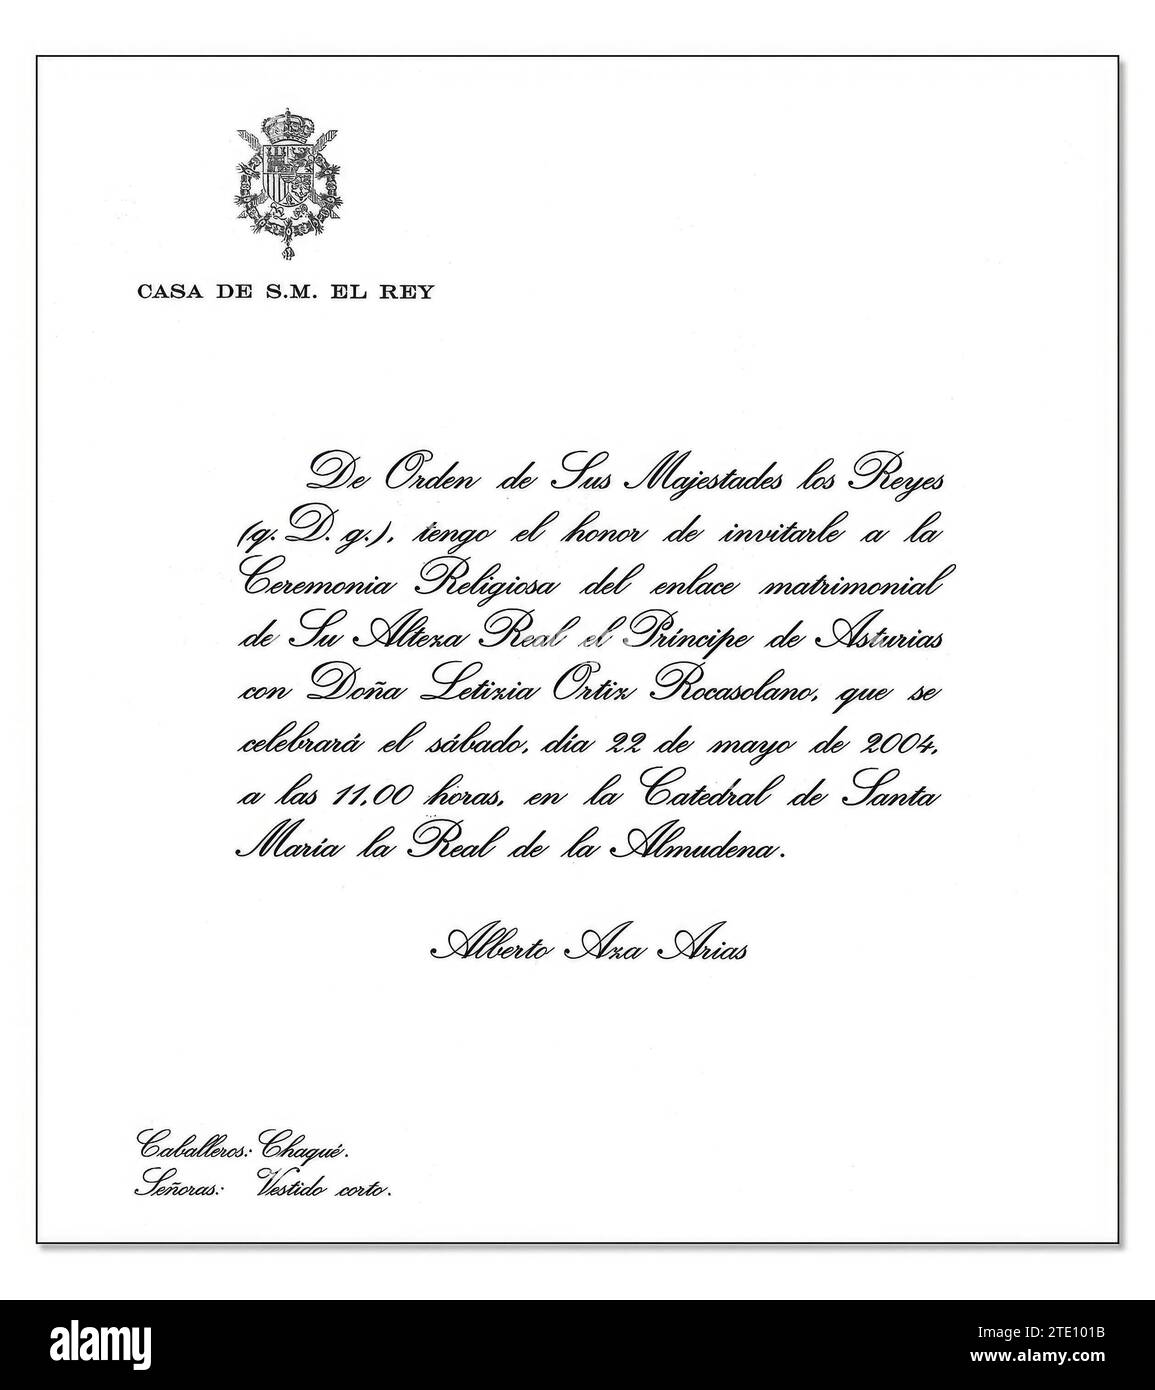 03/31/2004. Invito della Casa di HM il Re alle nozze di Felipe de Borbón e Letizia Ortiz. Crediti: Album / Archivo ABC Foto Stock